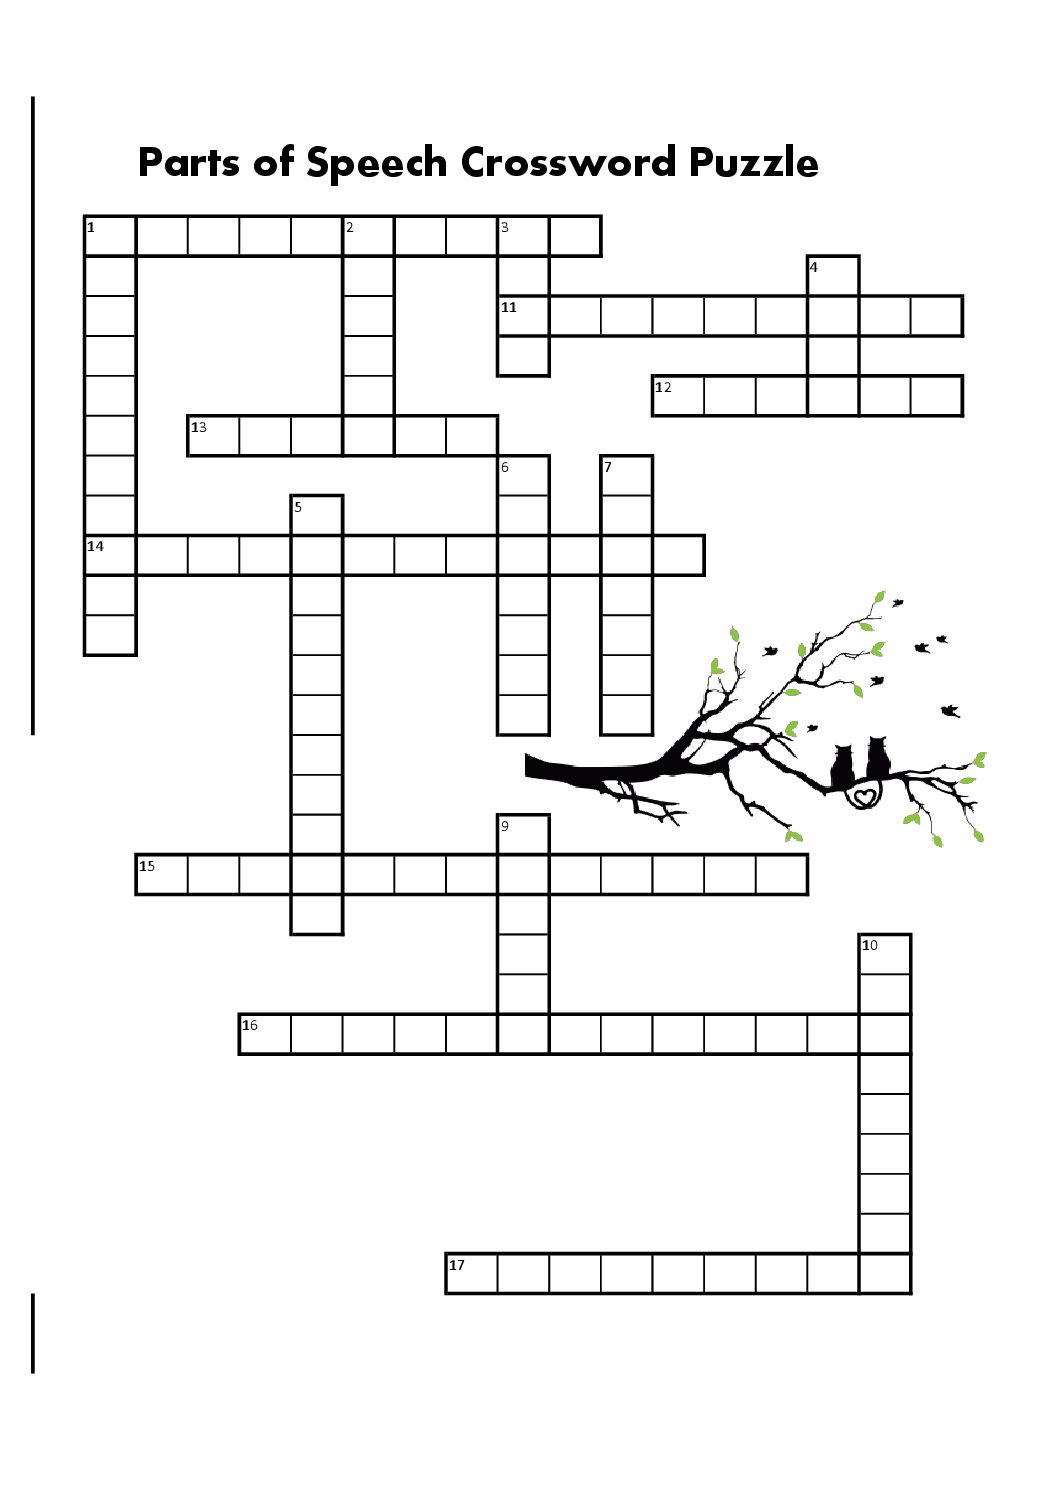 make a long speech crossword clue